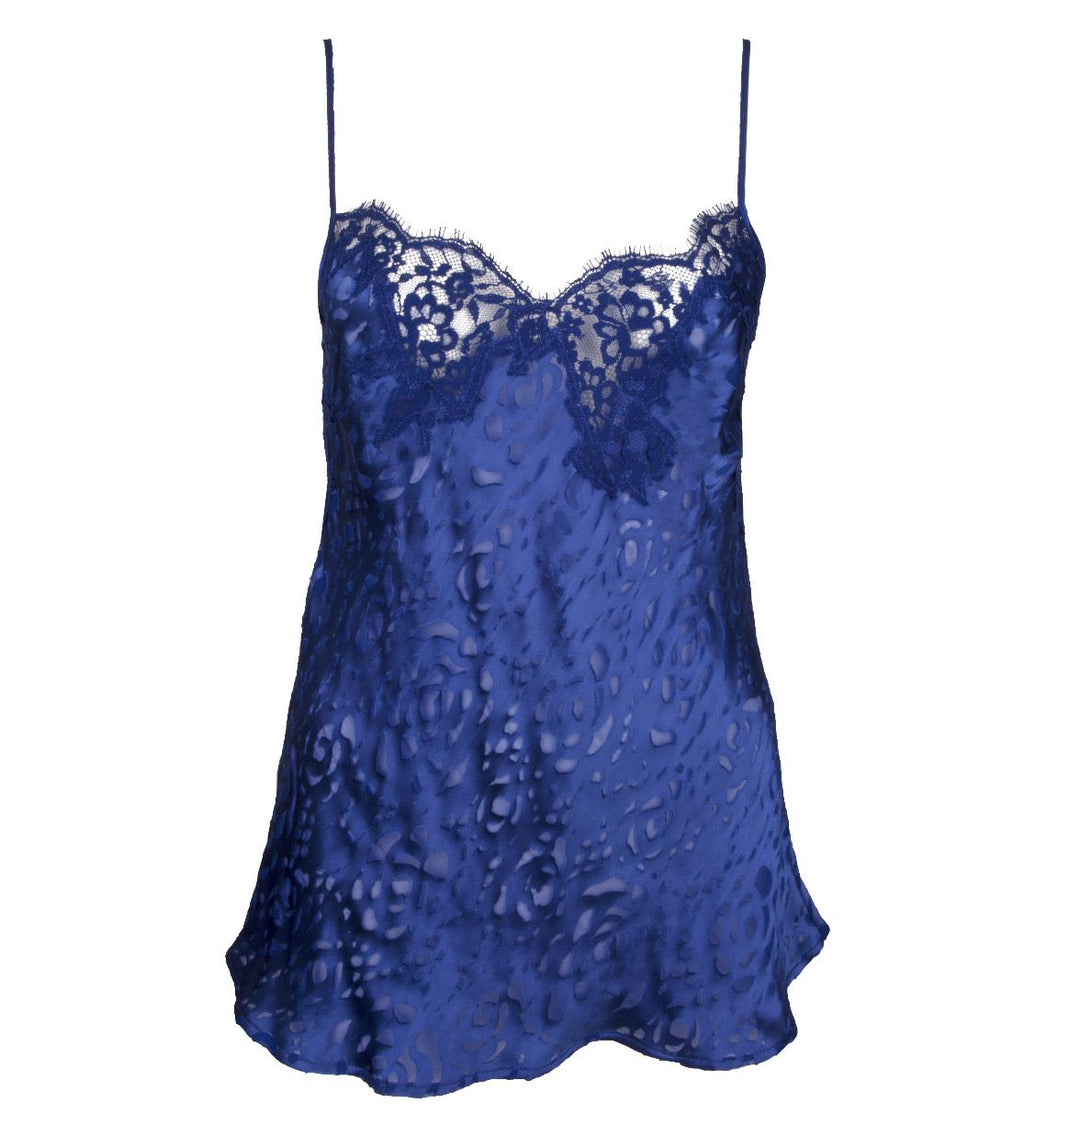 Лиз Чармел - Одевание лифчика с цветочным принтом Синее ночное белье Лиз Чармель